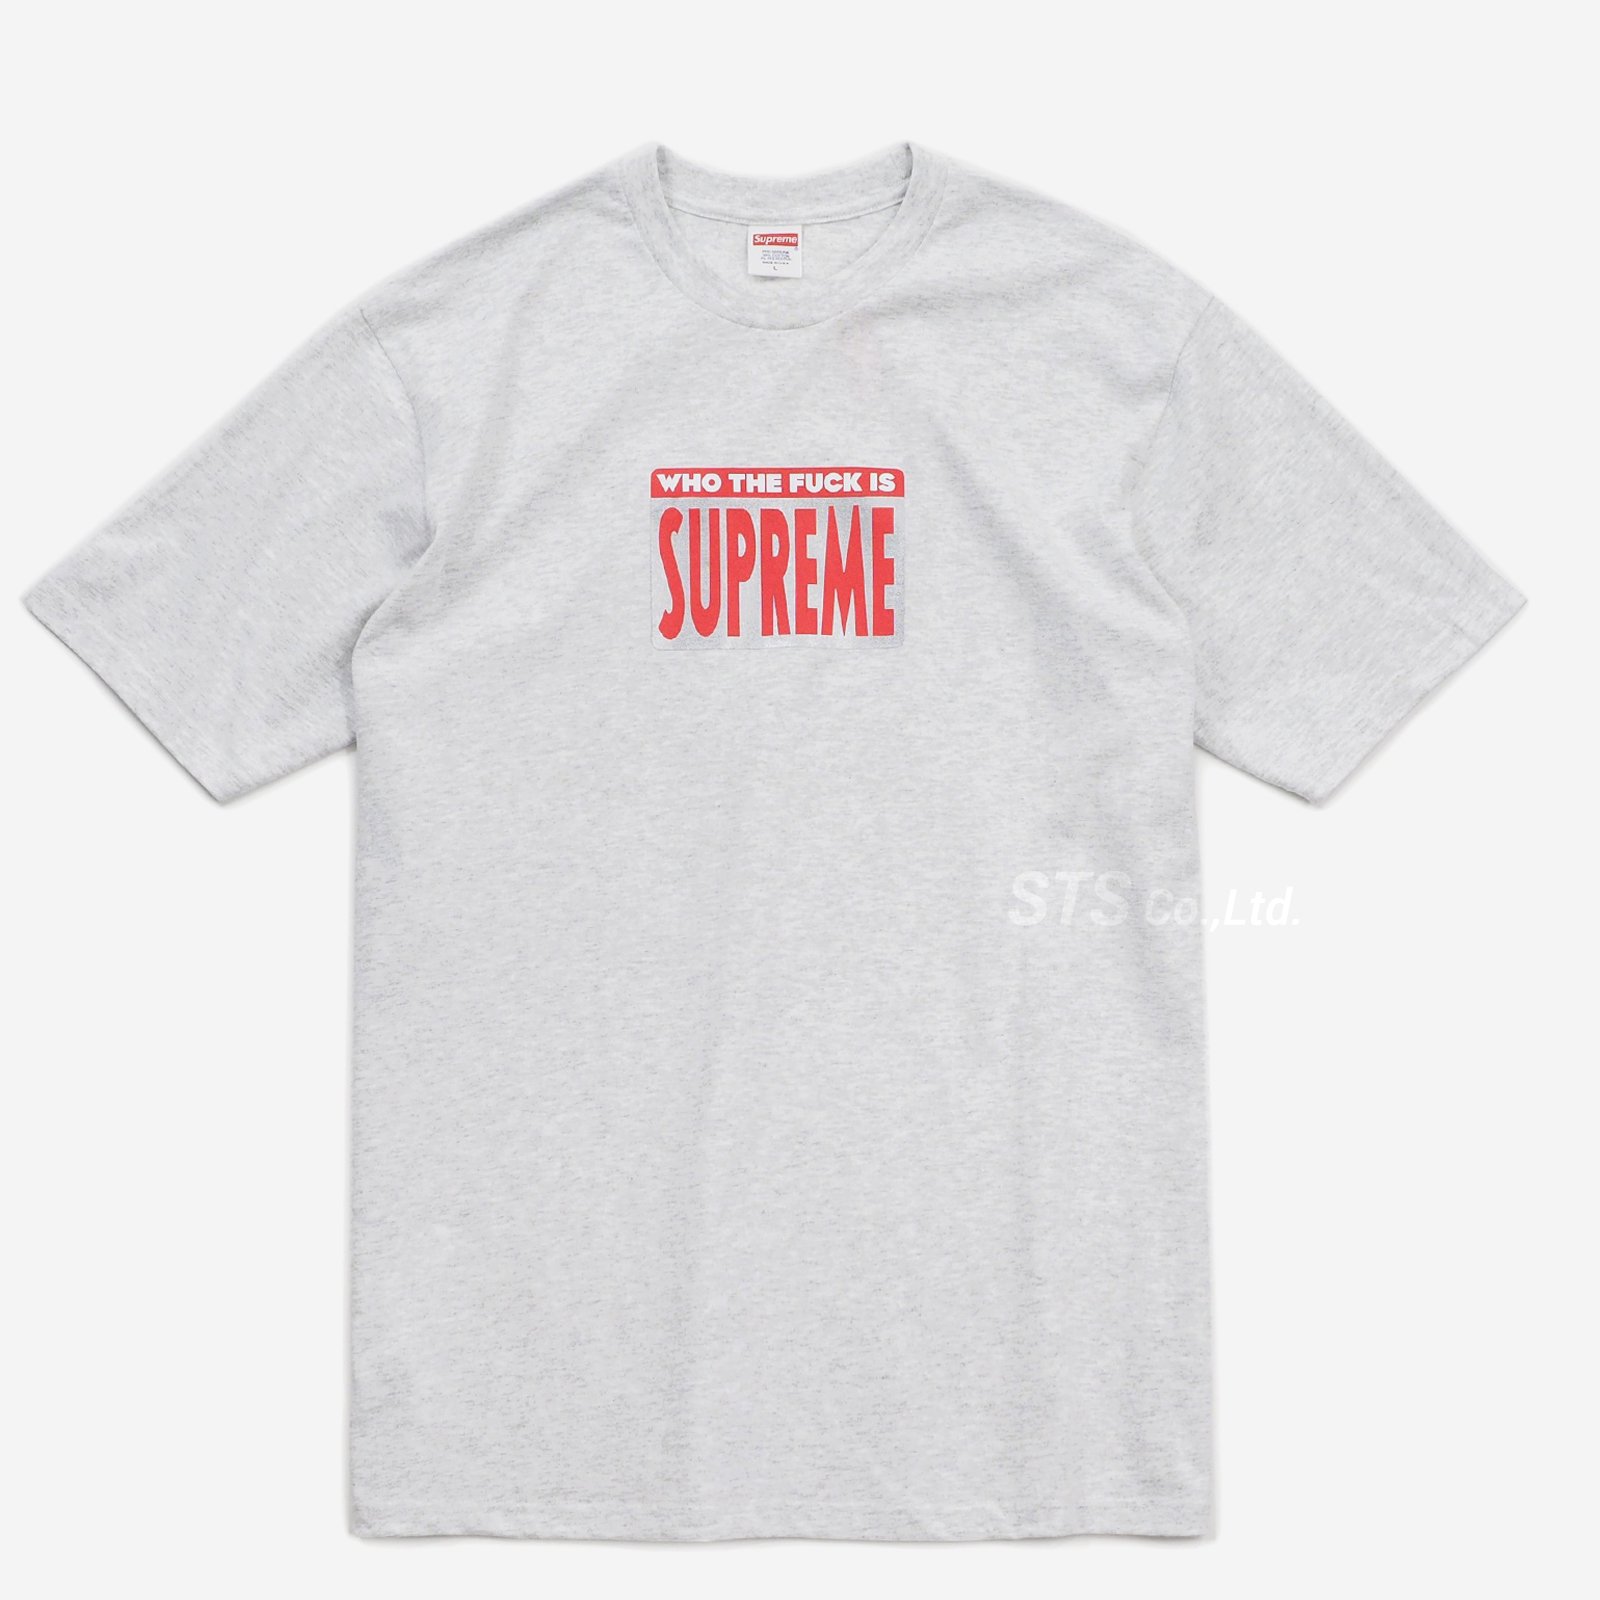 Supreme - Who The Fuck Tee - UG.SHAFT